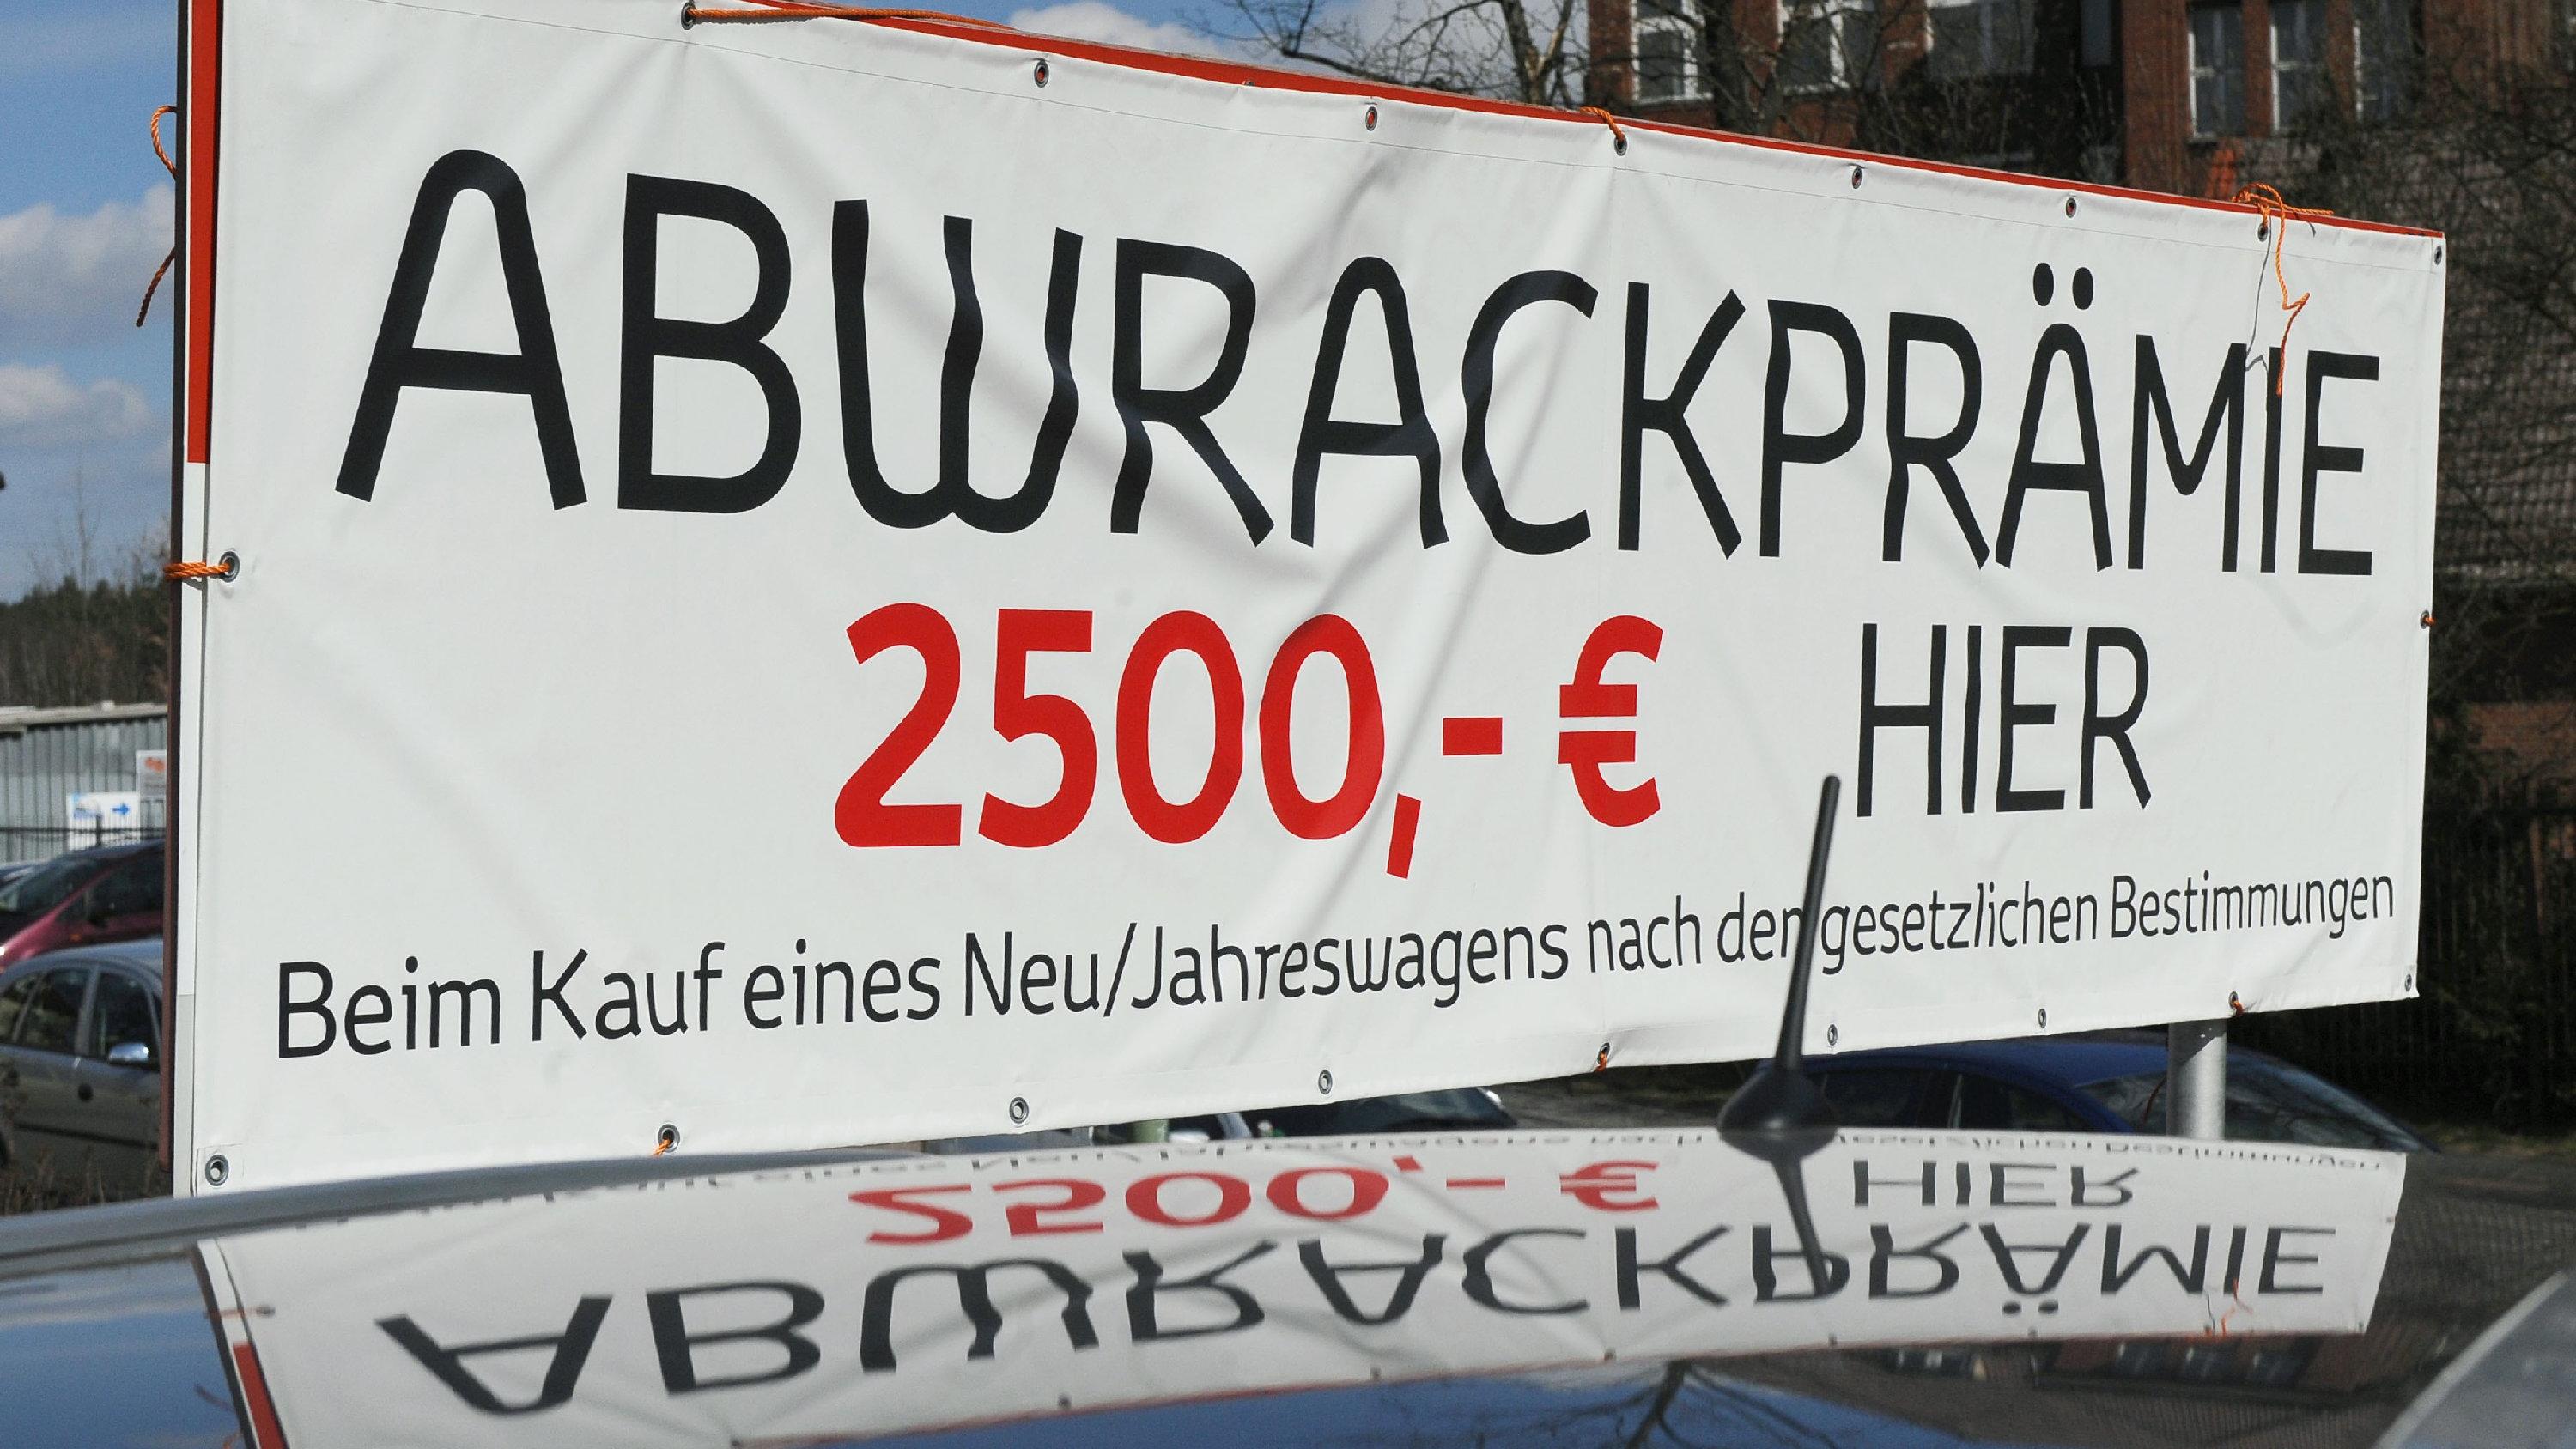 Ein Werbeschild, das auf die Gewährung der Abrackprämie hinweist, spiegelt sich am Mittwoch (25.03.2009) in Berlin auf dem Gelände eines Autohändlers im Dach eines Autos. Die staatliche Abwrackprämie zur Ankurbelung des Neuwagengeschäfts soll aufgest